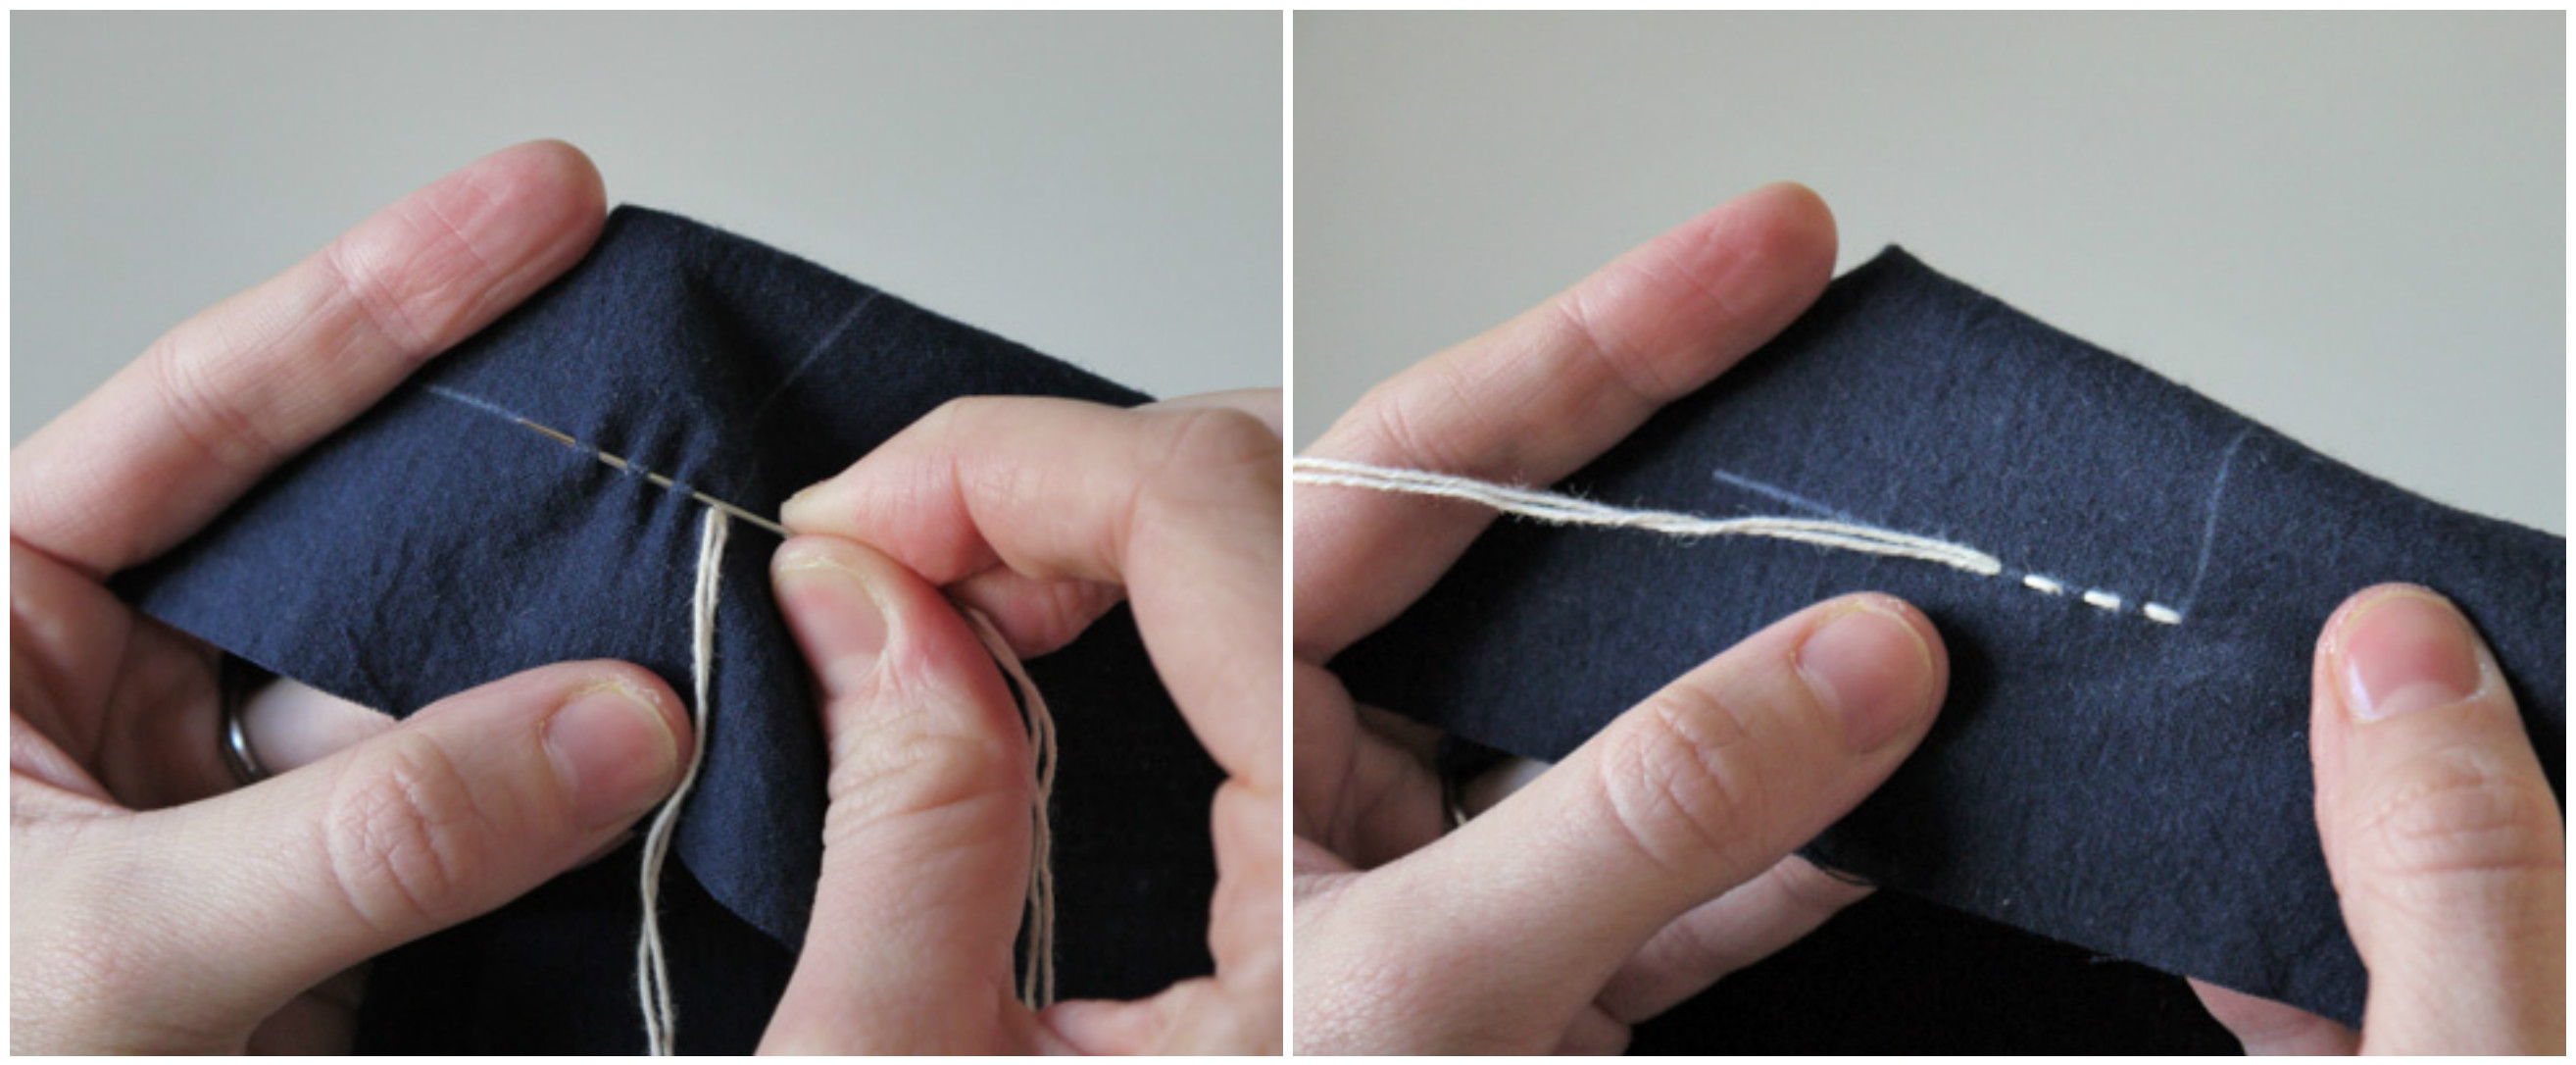 Японская вышивка сашико: мастер-класс чтобы, вышивки, сашико, стежки, натяжение, стороне, на ткань, нужно, используется, случае, на случай, в процессе, после, вы вышиваете, белая, бумага, с помощью, рисунка, процесс, можно